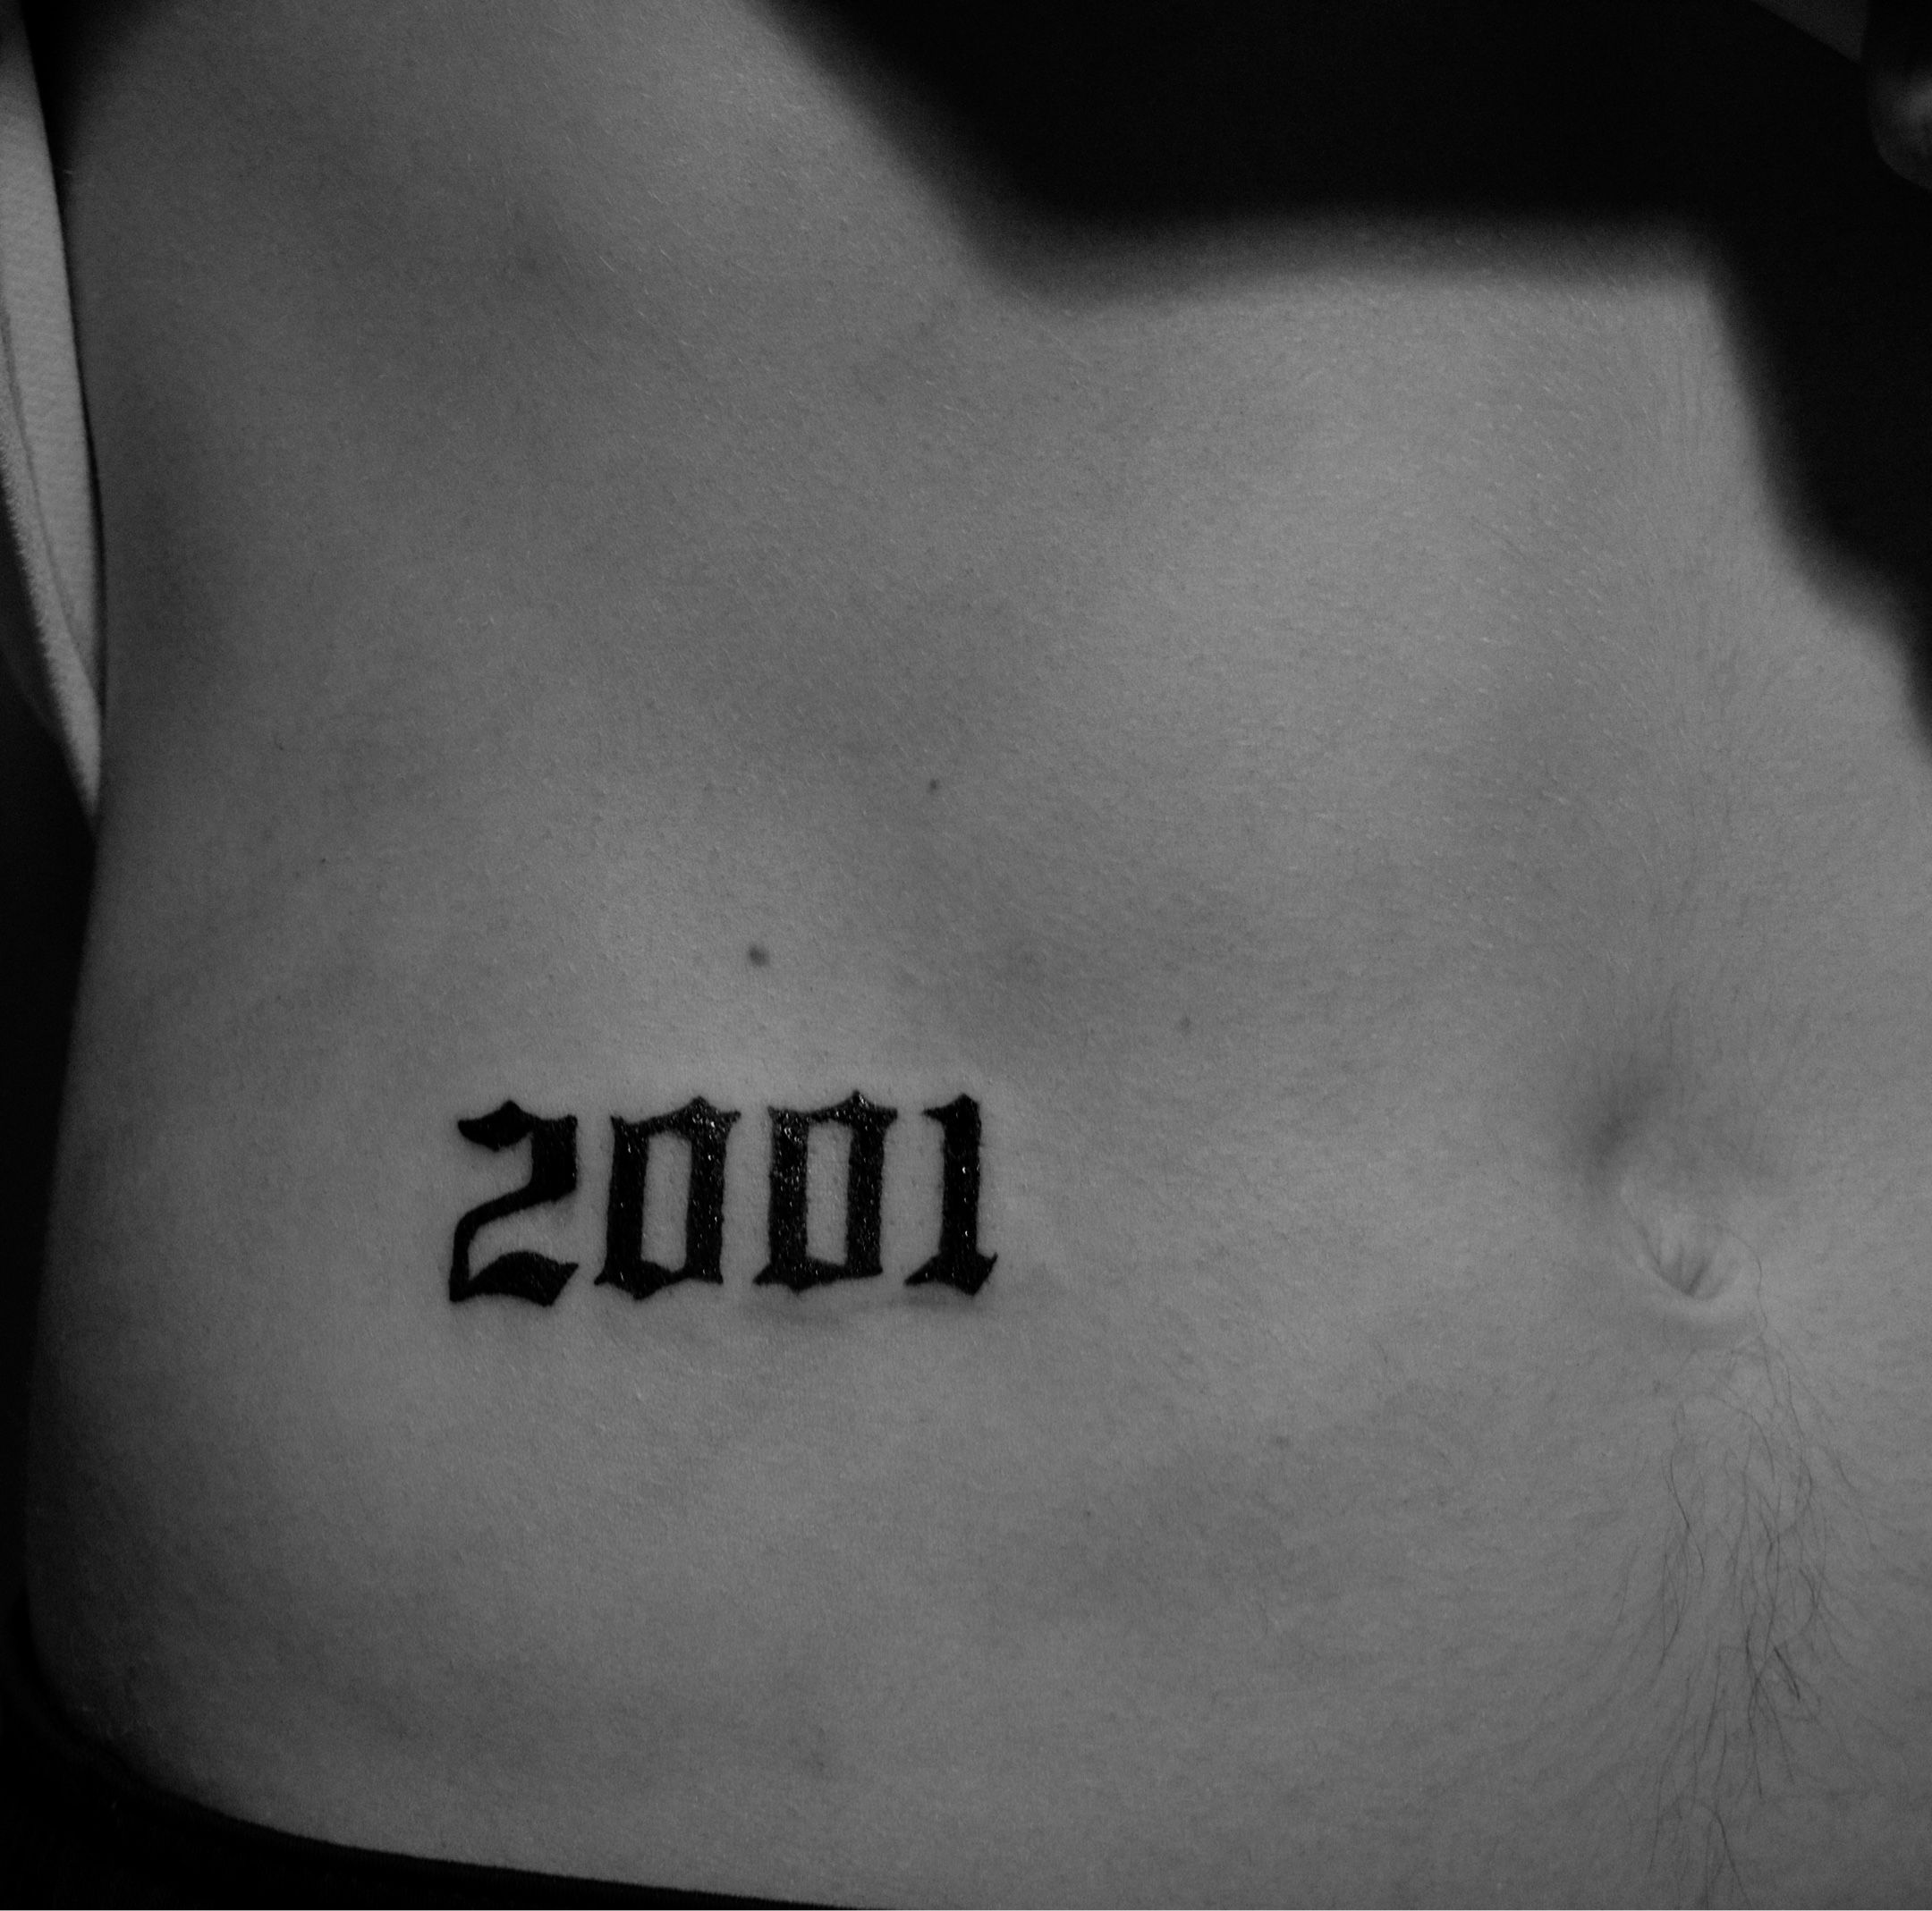 Top Most 10 Best 2001 Tattoo Ideas